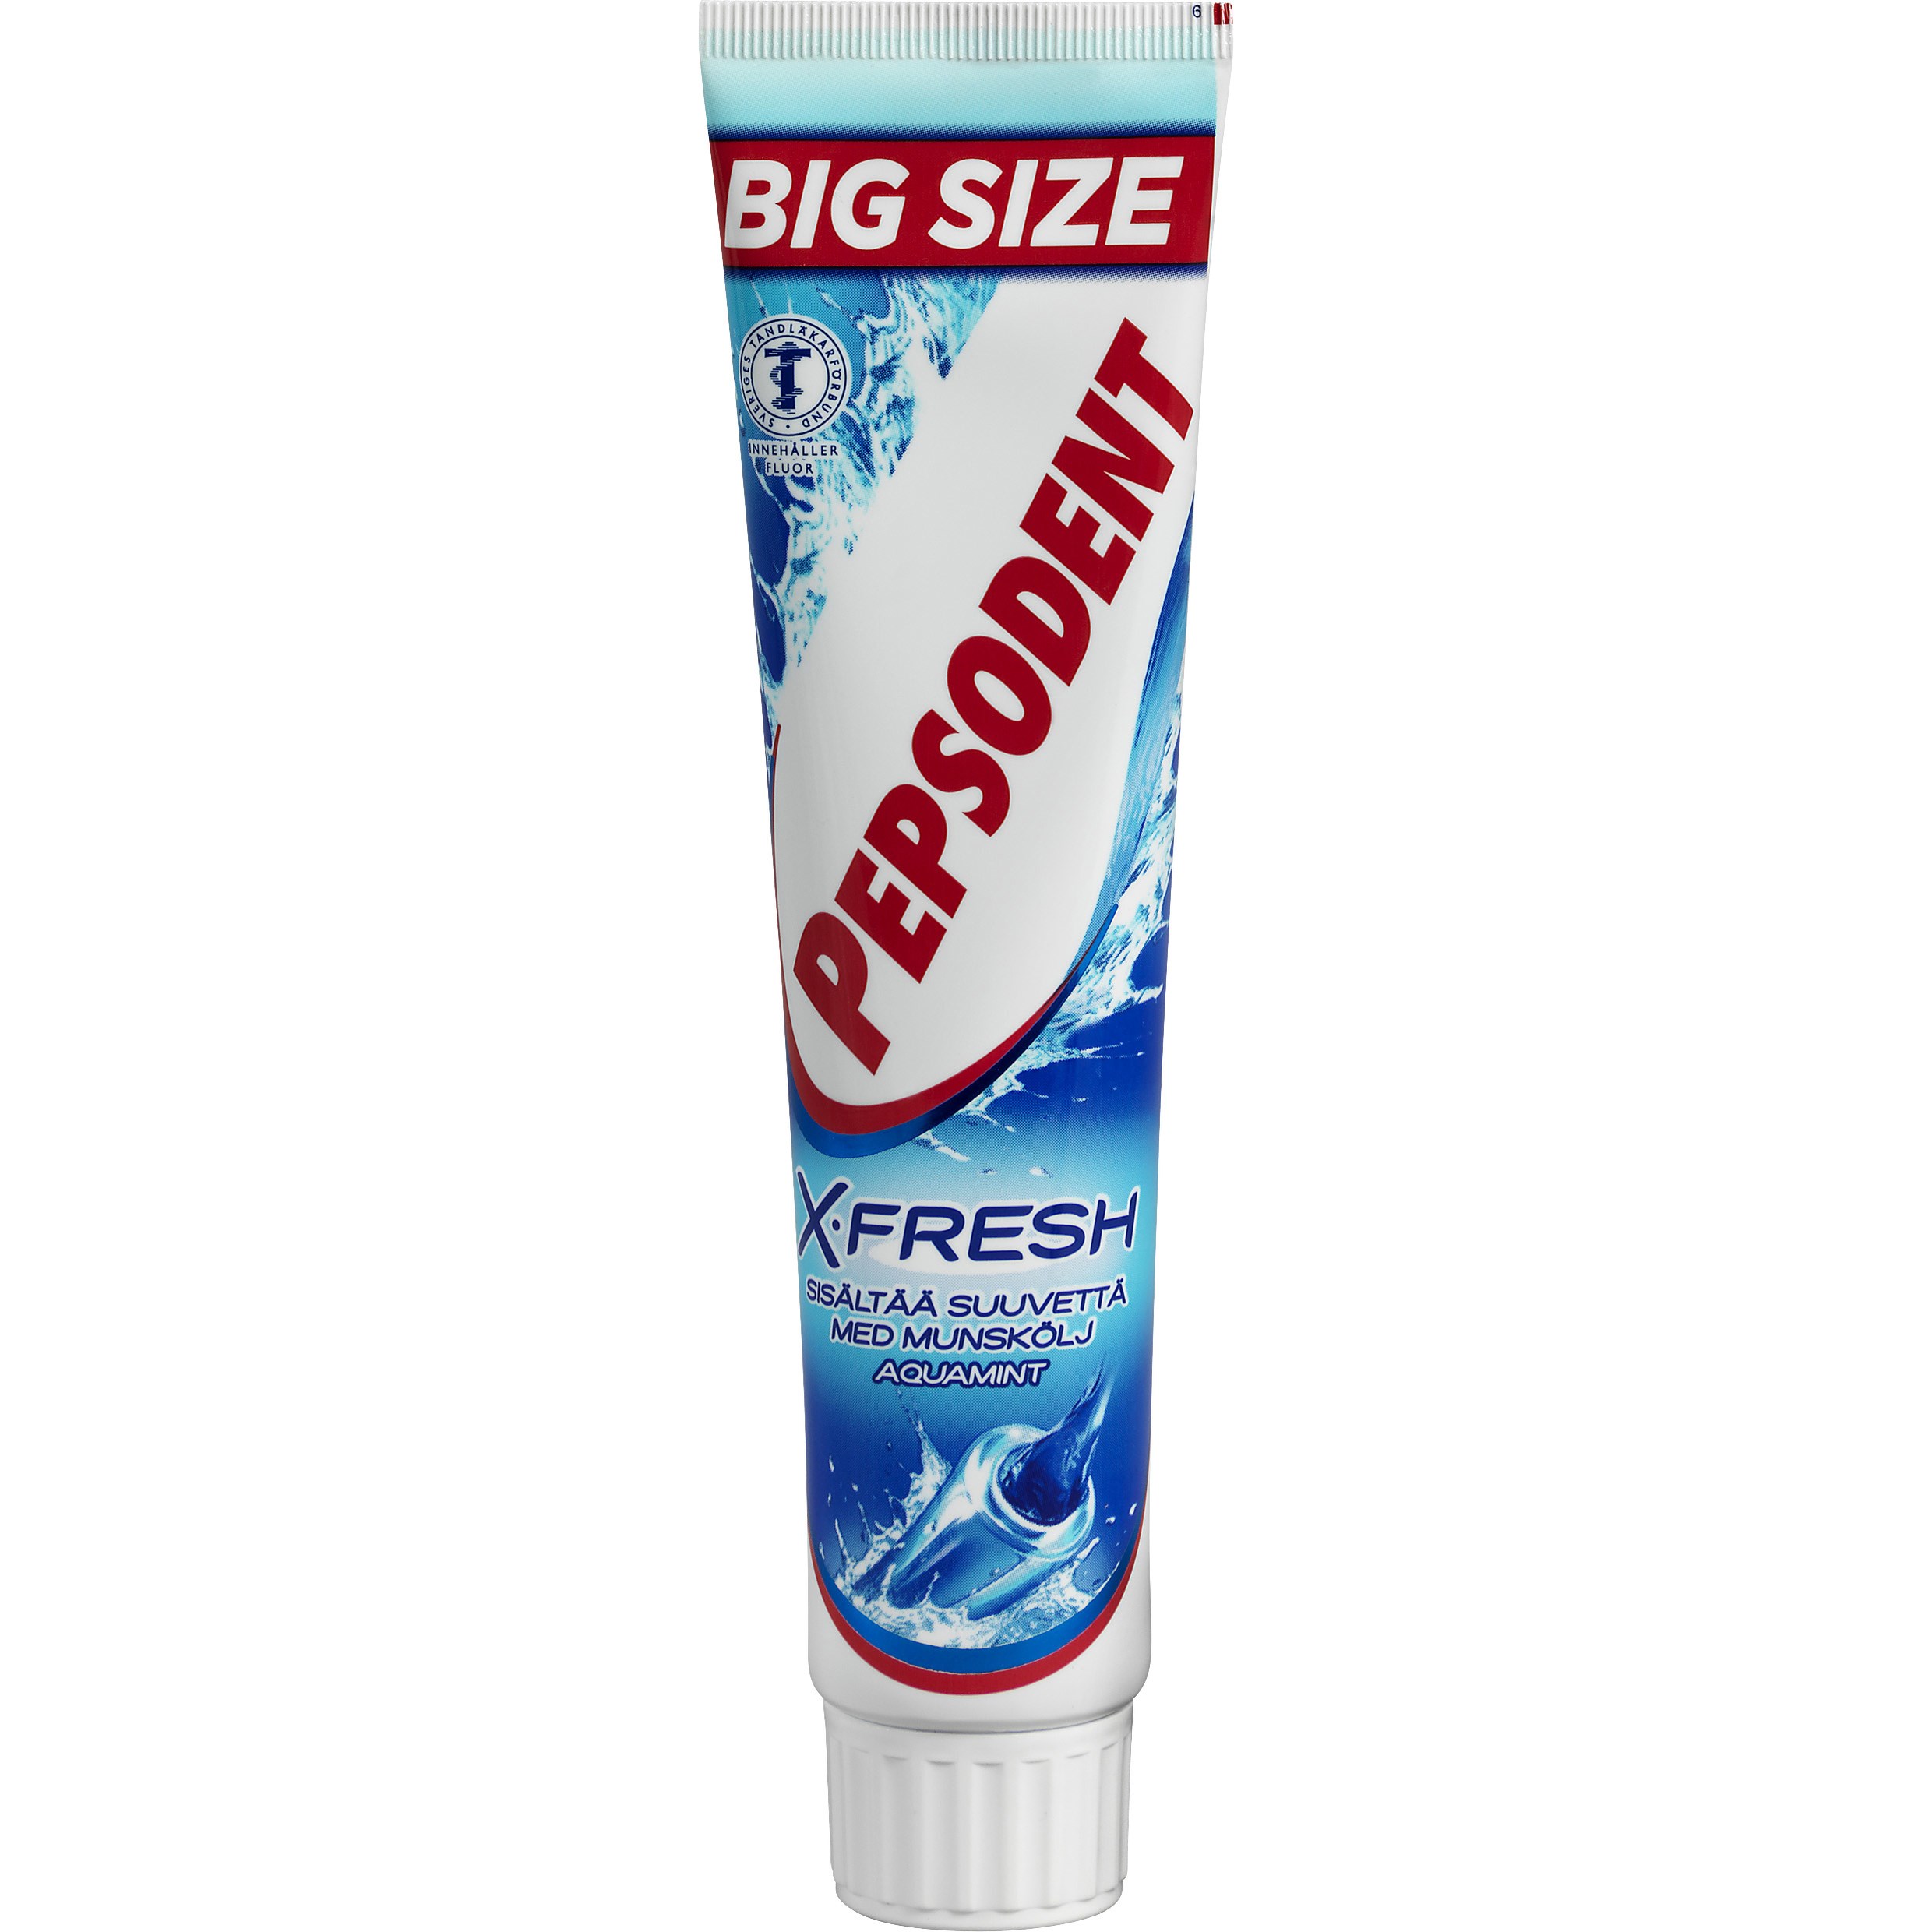 Pepsodent X-fresh Aquamint 125 ml